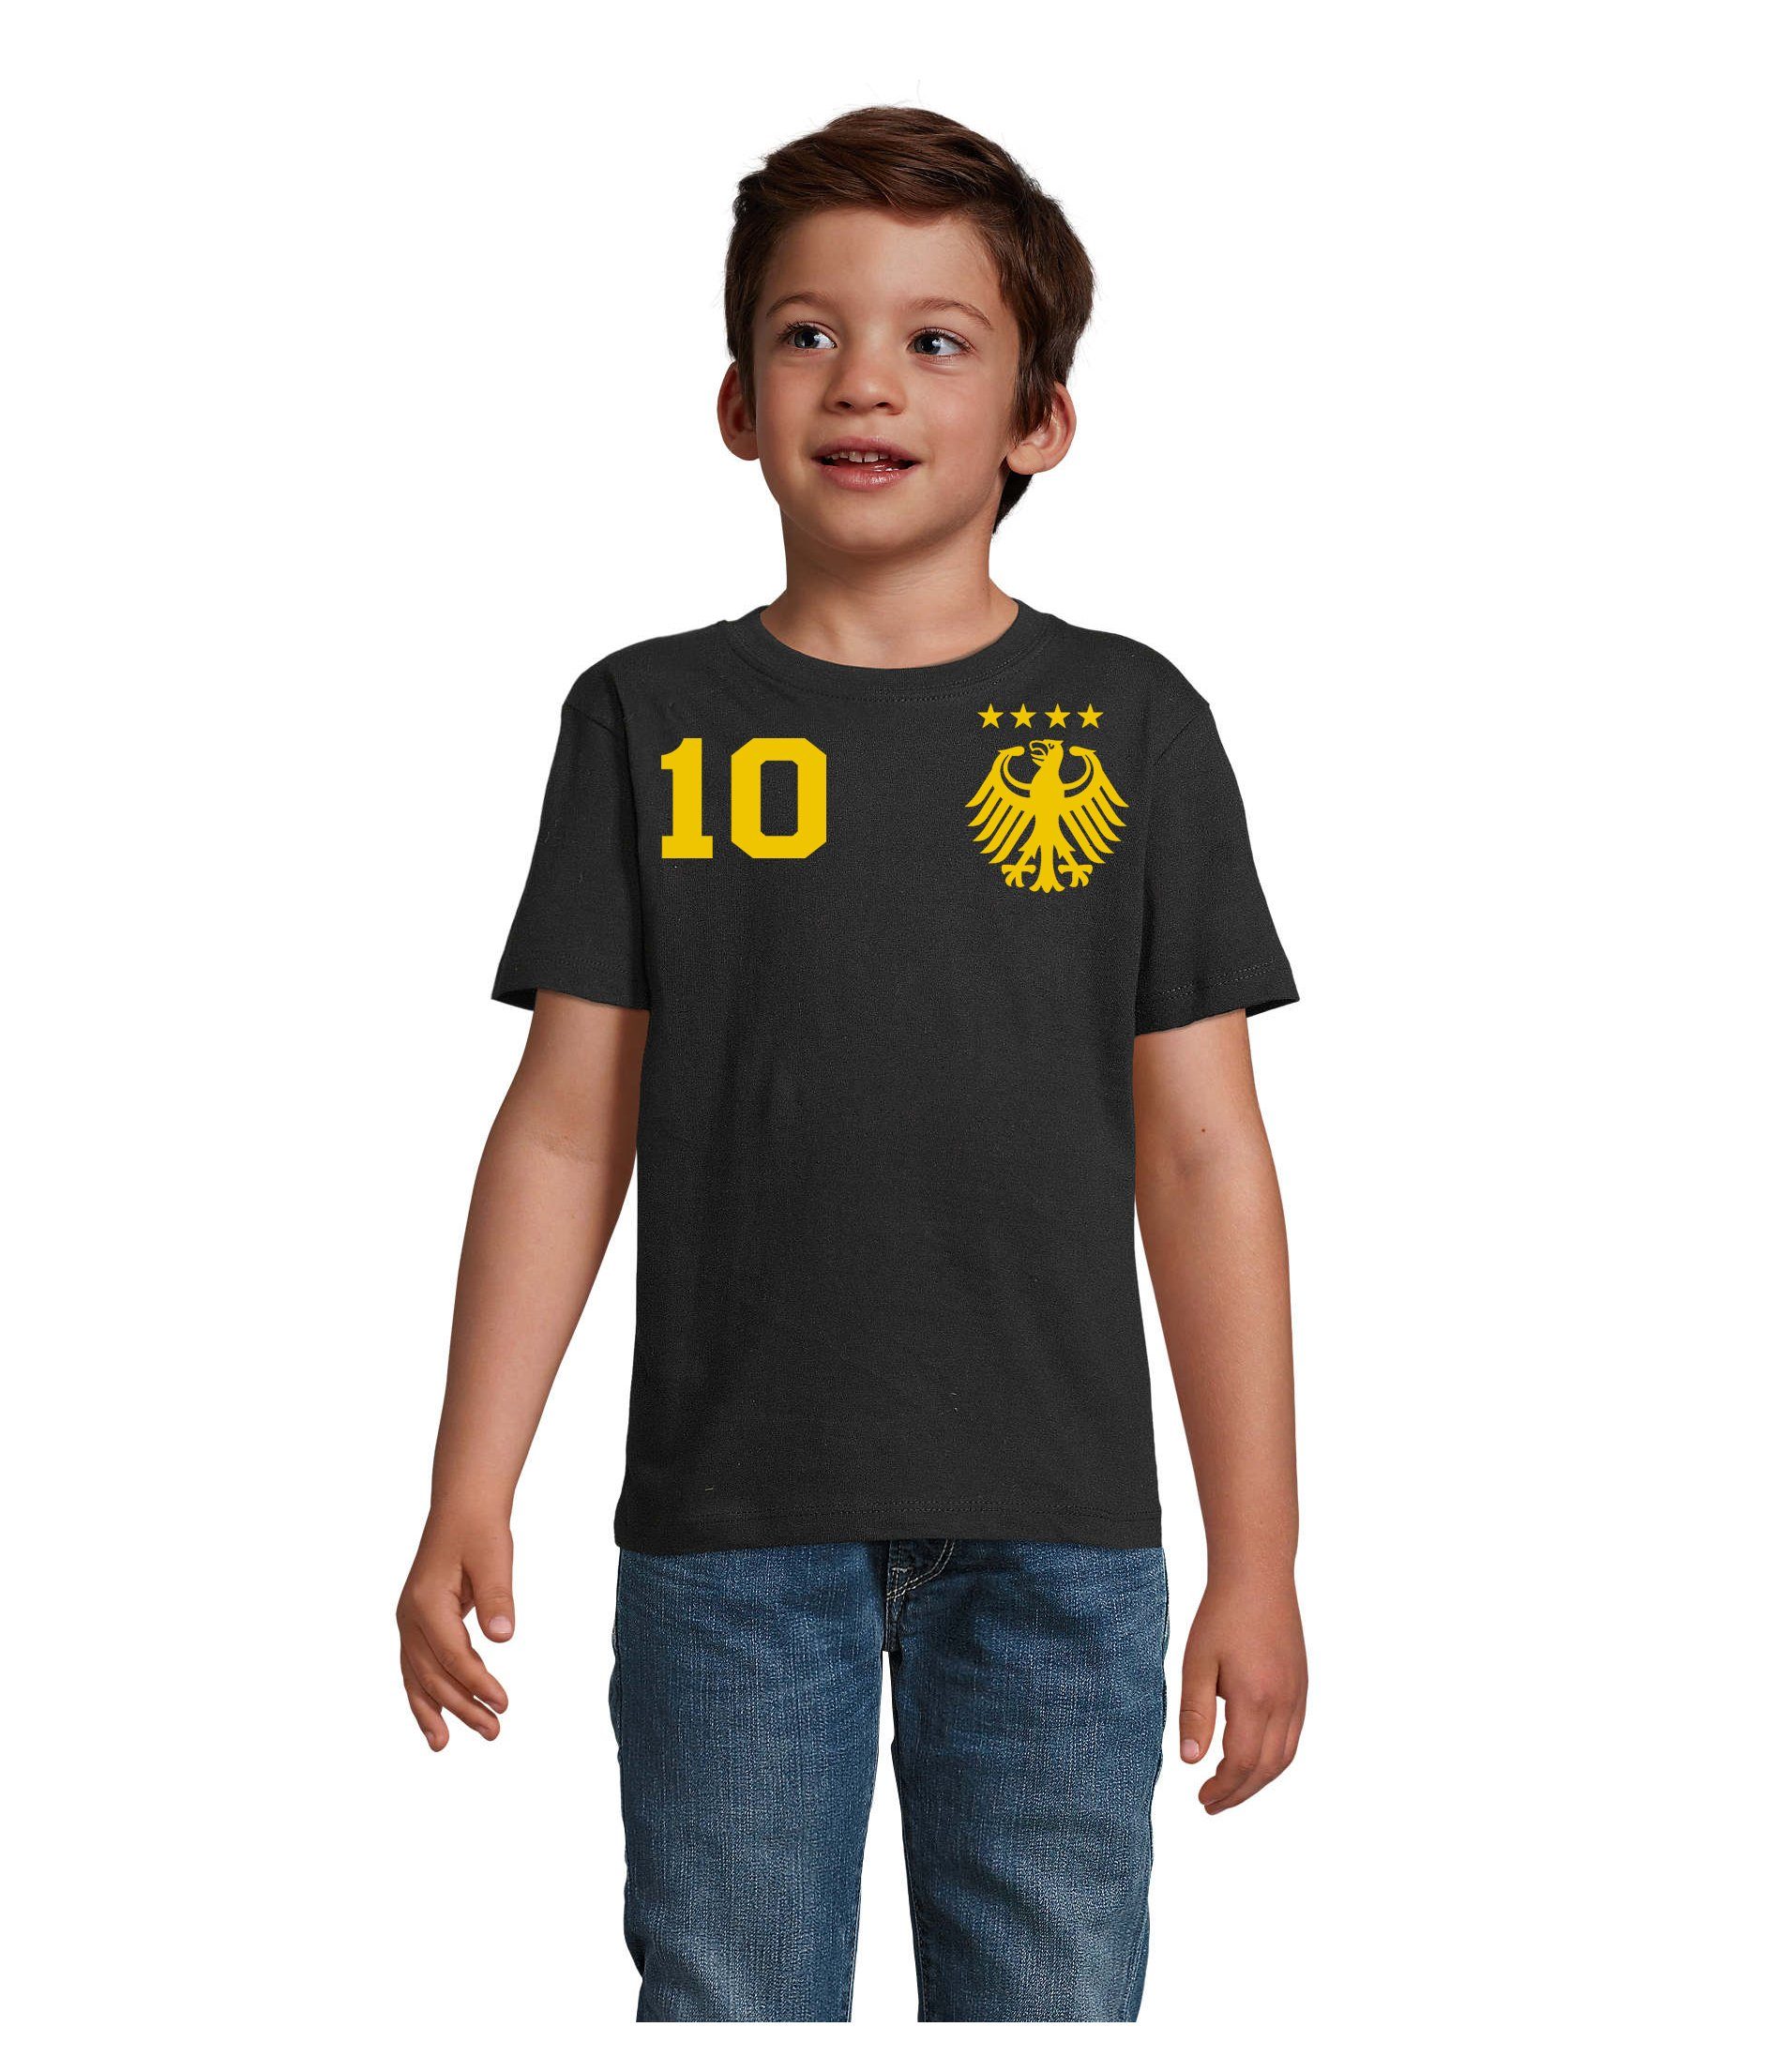 Blondie & Brownie T-Shirt Kinder Deutschland Germany Sport Trikot Fußball Meister EM Gold/Schwarz